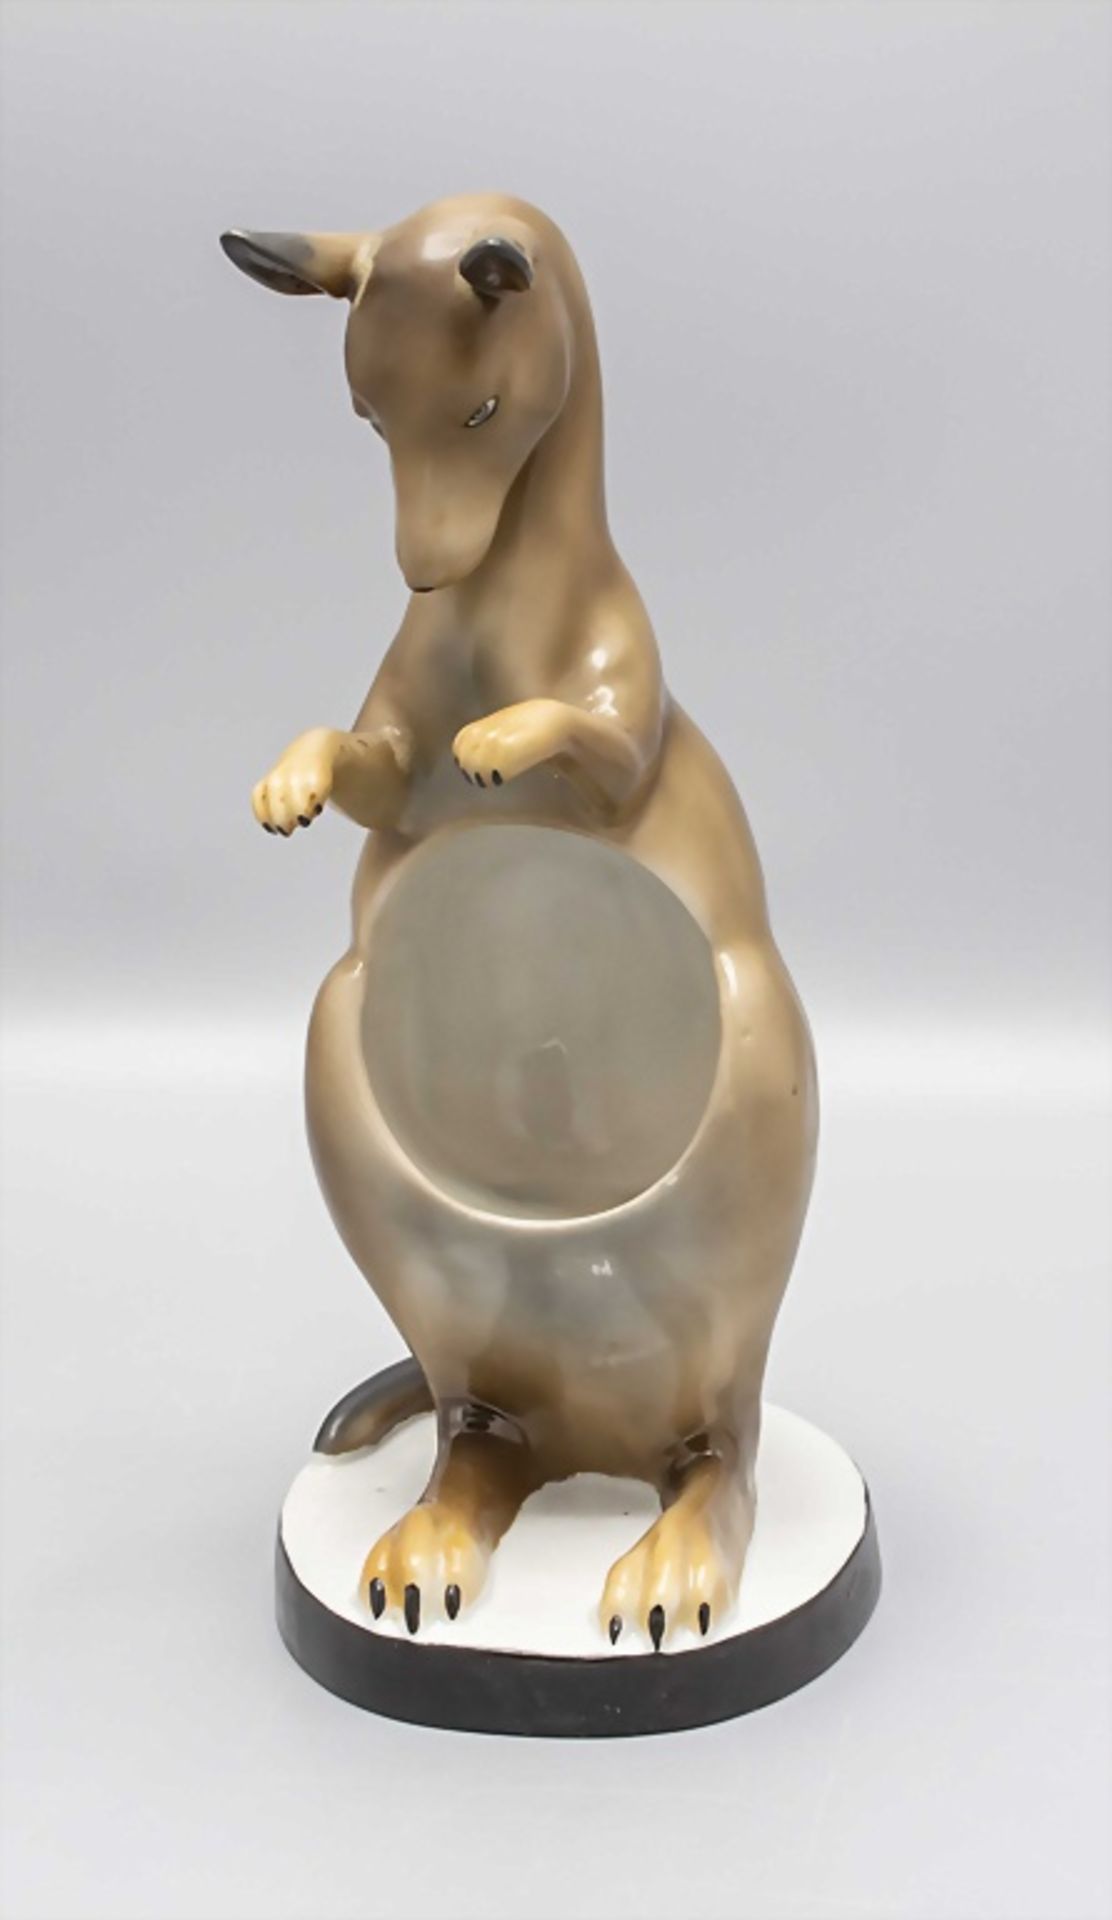 Porzallan Känguru als Halter / A porcelain kangaroo as holder, Anfang 20. Jh. - Bild 2 aus 6